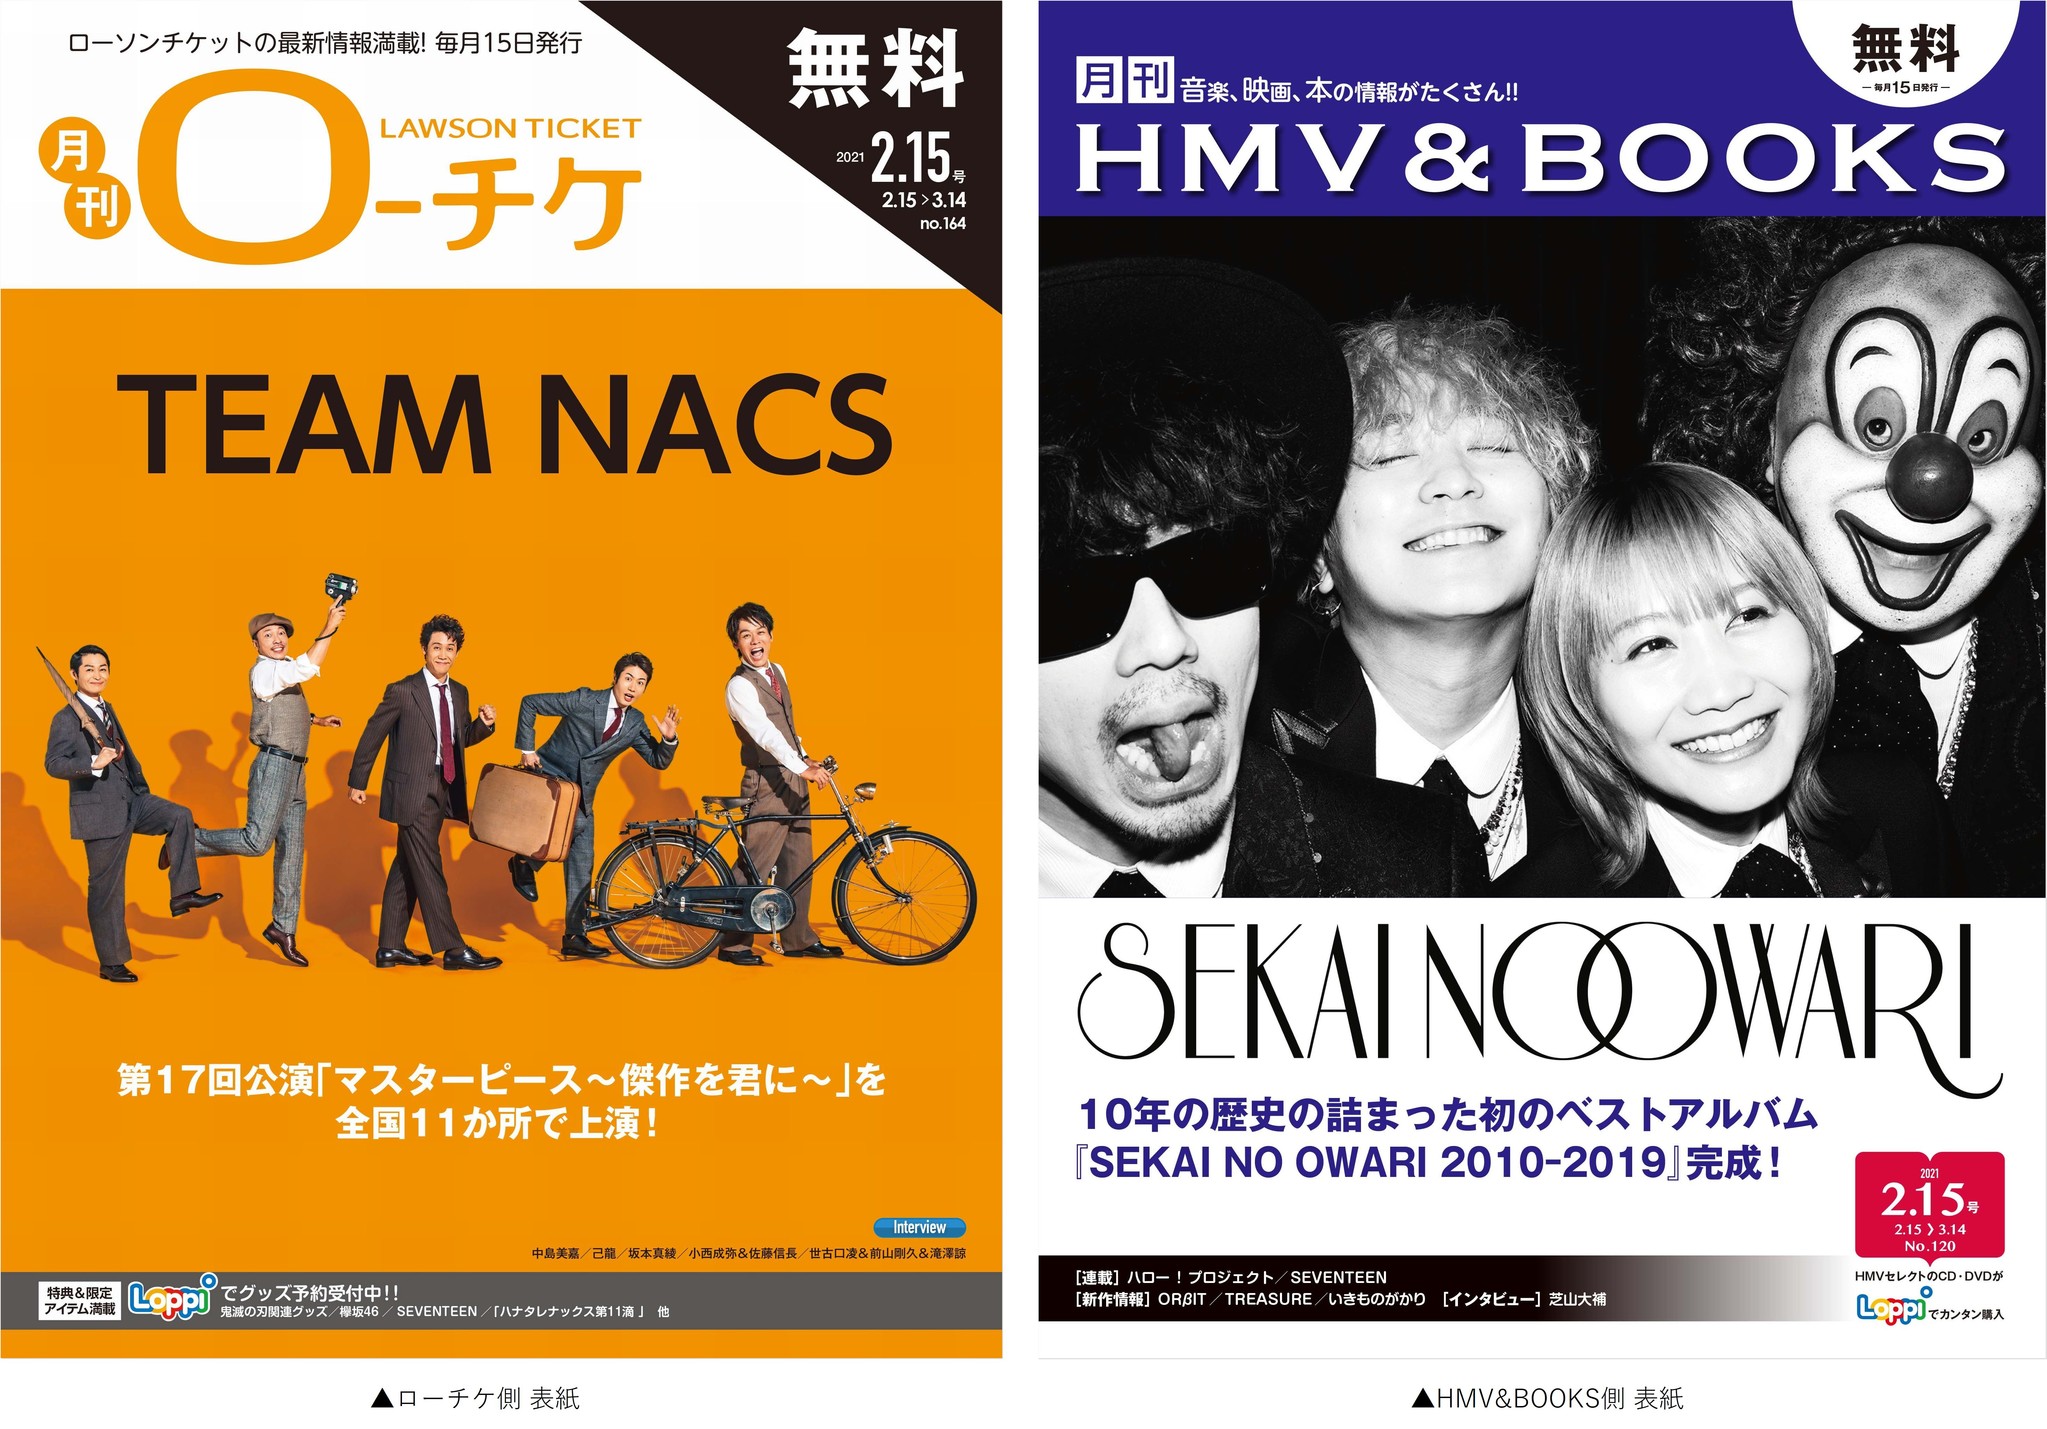 本日発行 フリーペーパー 月刊ローチケ 月刊hmv Books ２月号の表紙 巻頭特集は Team Nacs Sekai No Owari が登場 株式会社ローソンエンタテインメントのプレスリリース